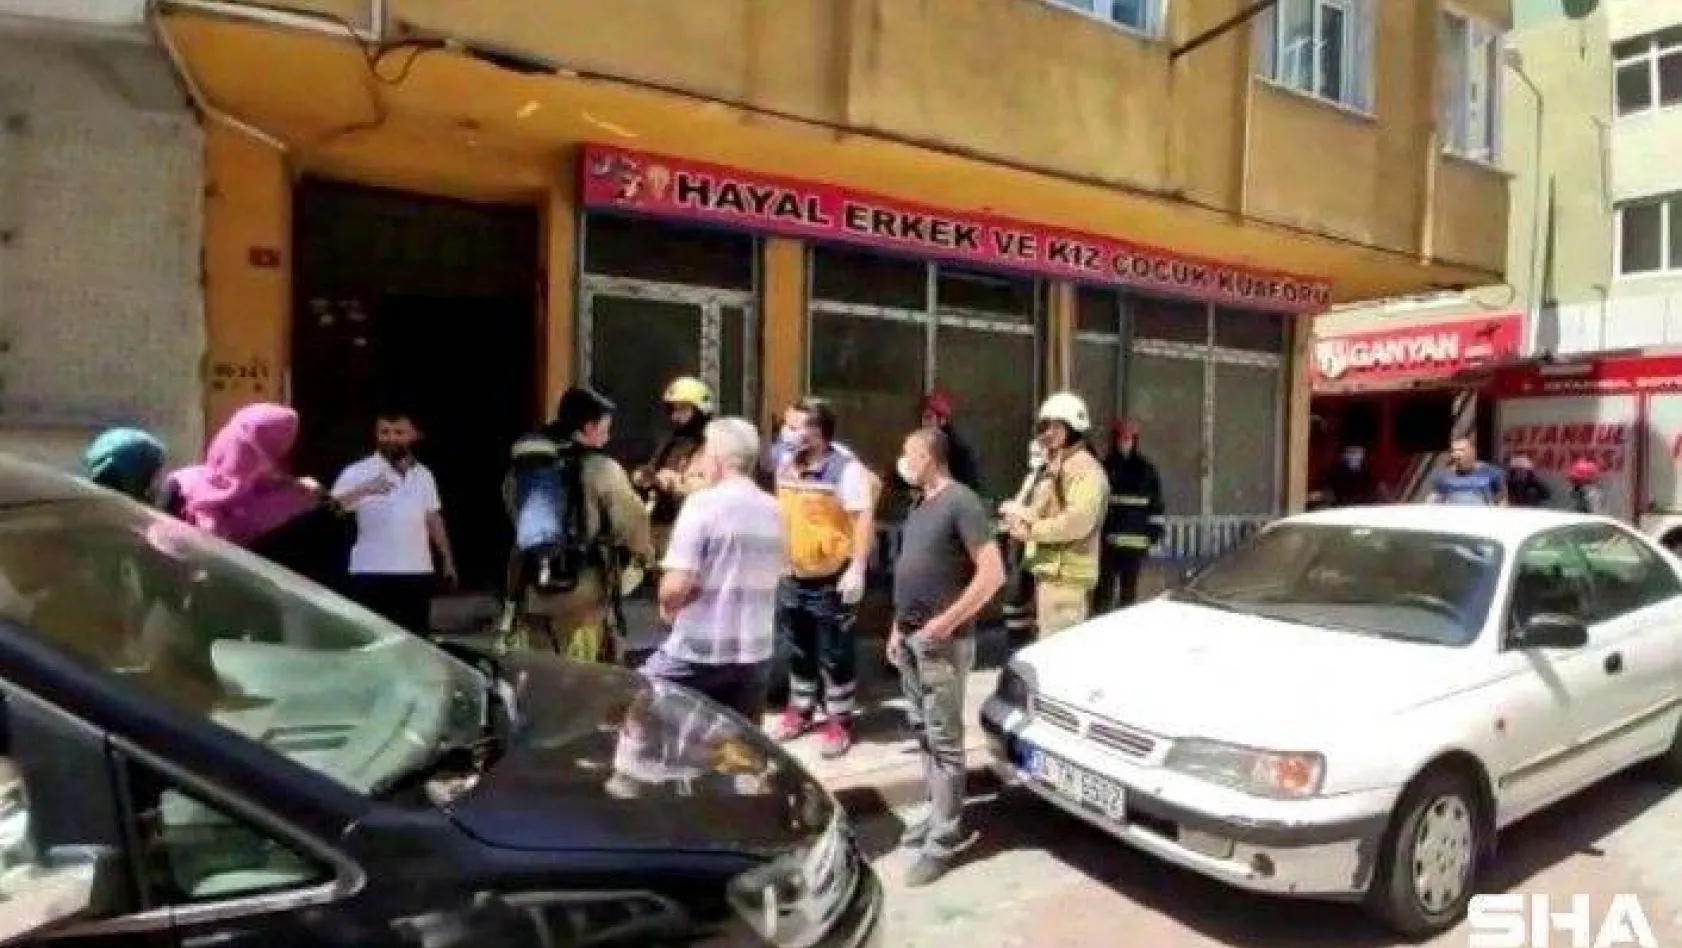 Sultangazi'de ocakta unutulan yemek nedeniyle yangın çıktı